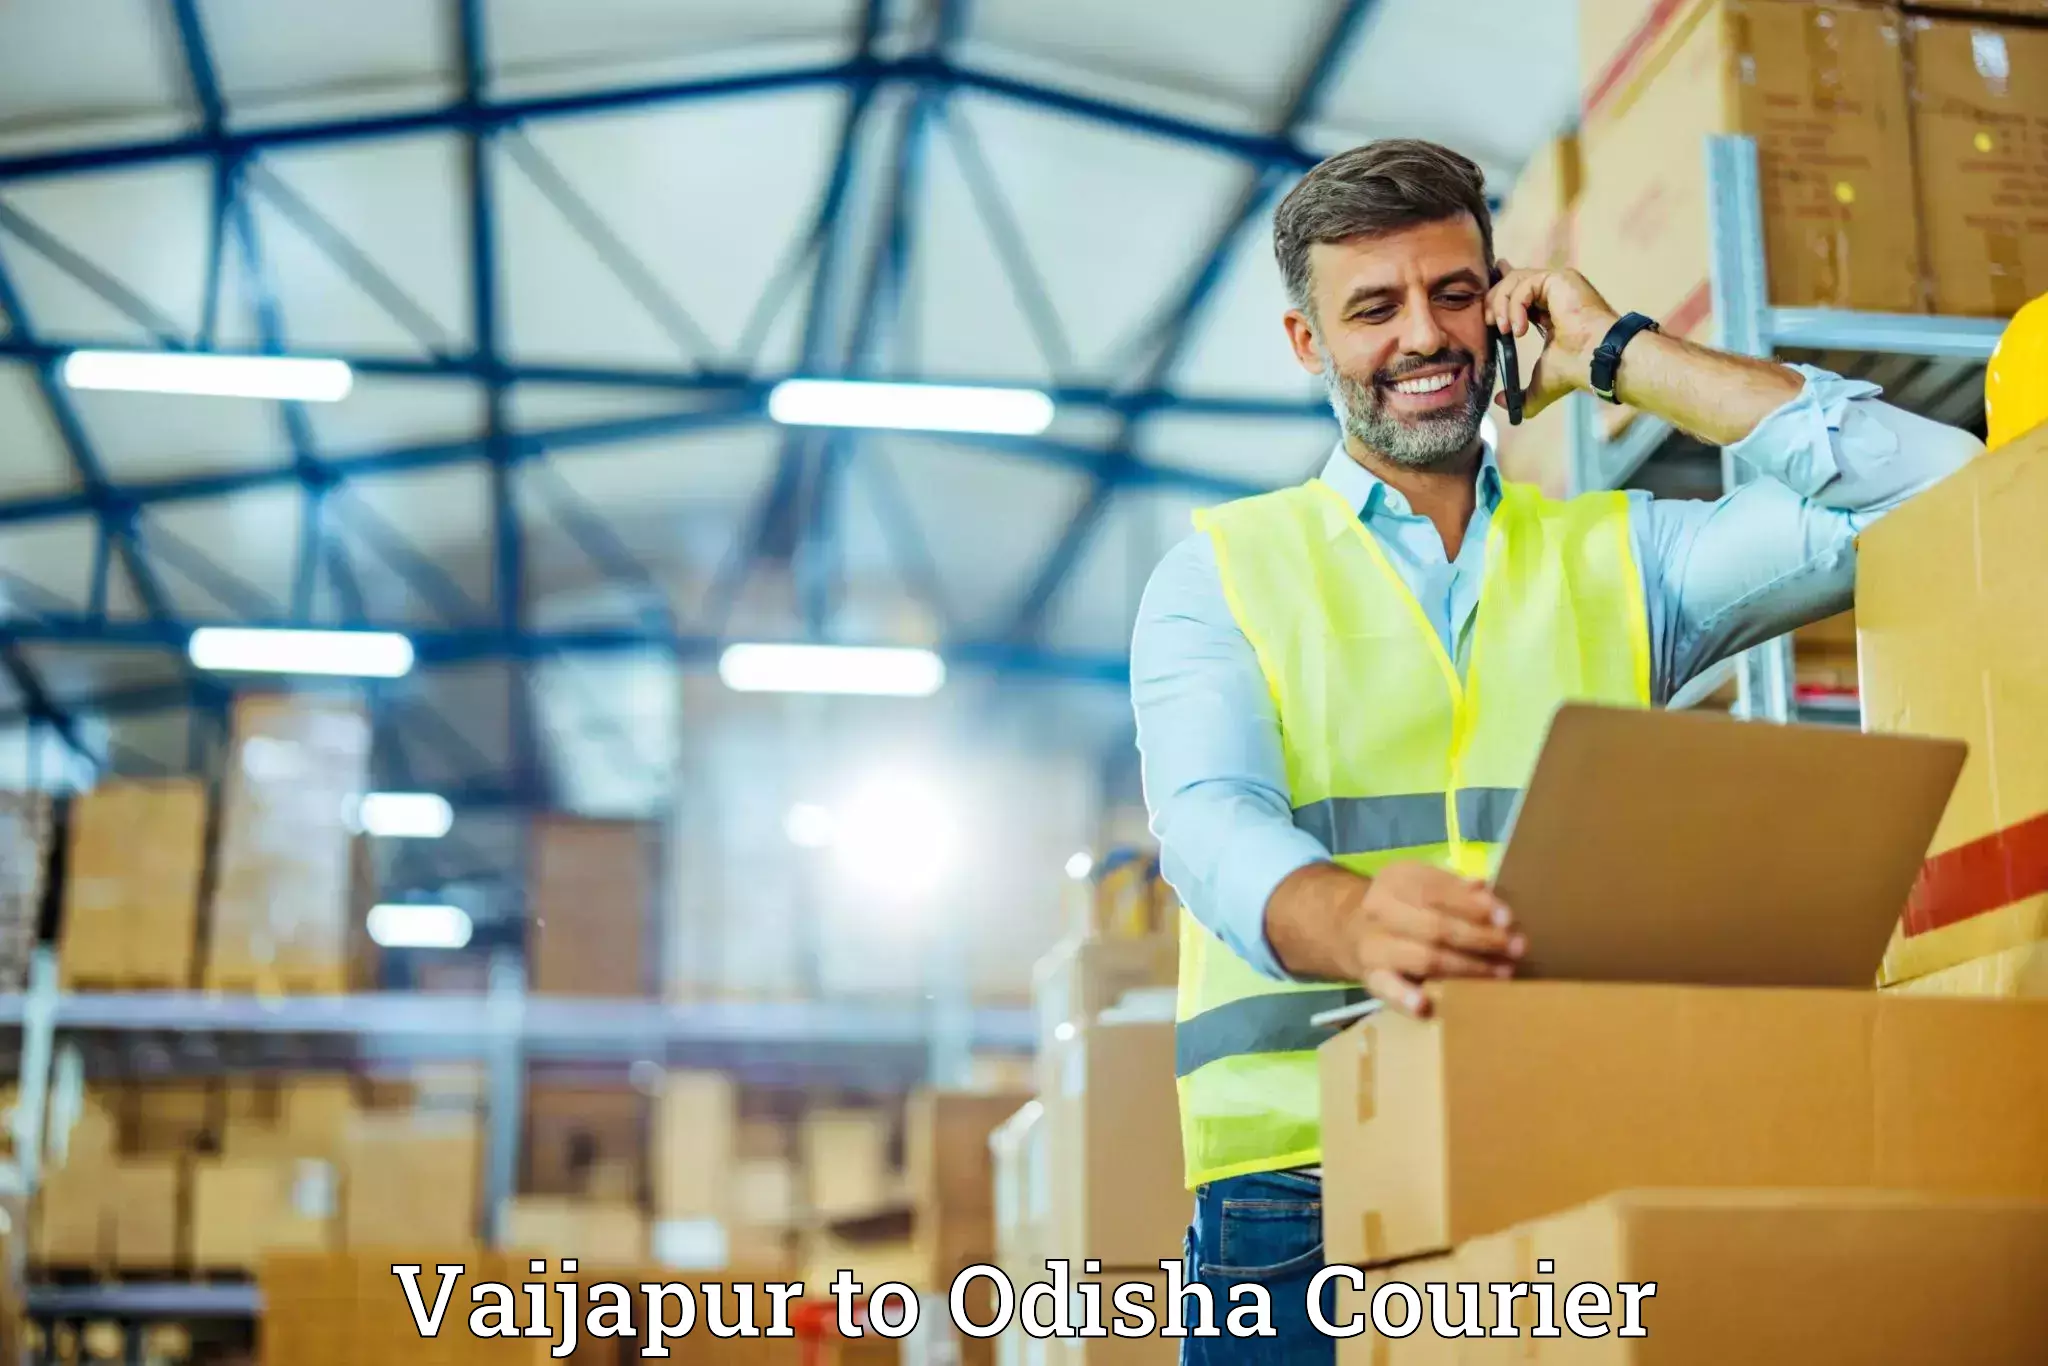 Luggage shipment specialists Vaijapur to Sundergarh